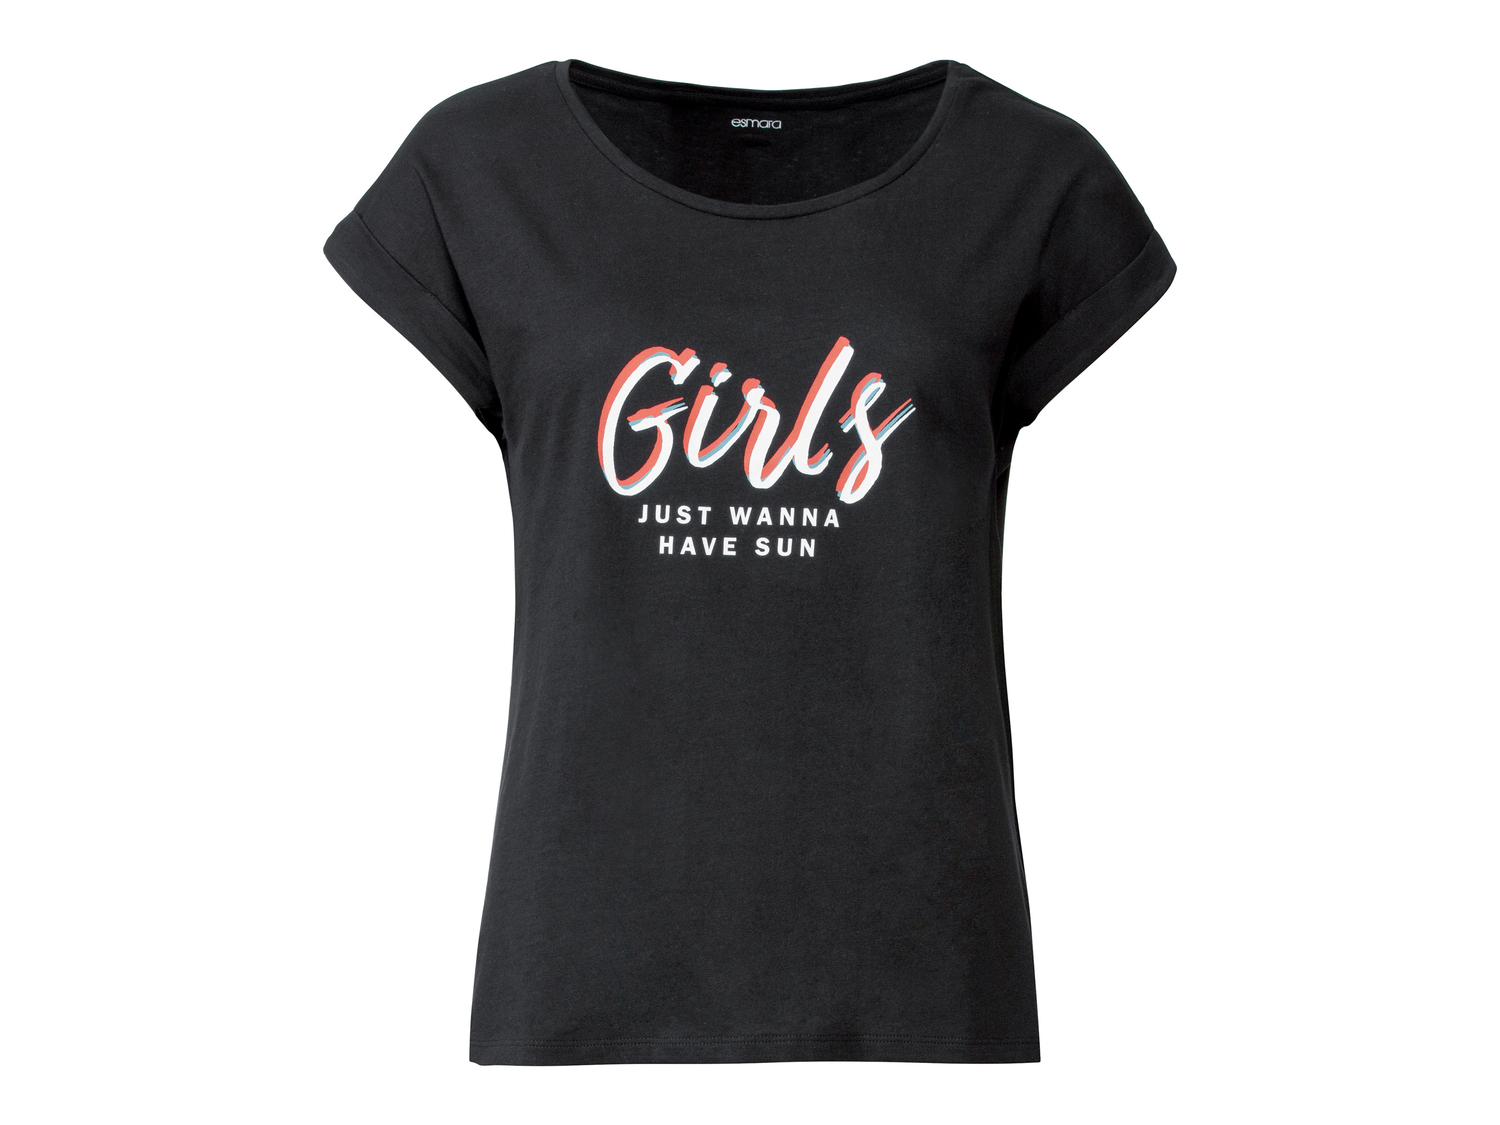 T-Shirt da donna Esmara, prezzo 4.99 &#8364; 
Misure: S-L
Taglie disponibili

Caratteristiche

- ...